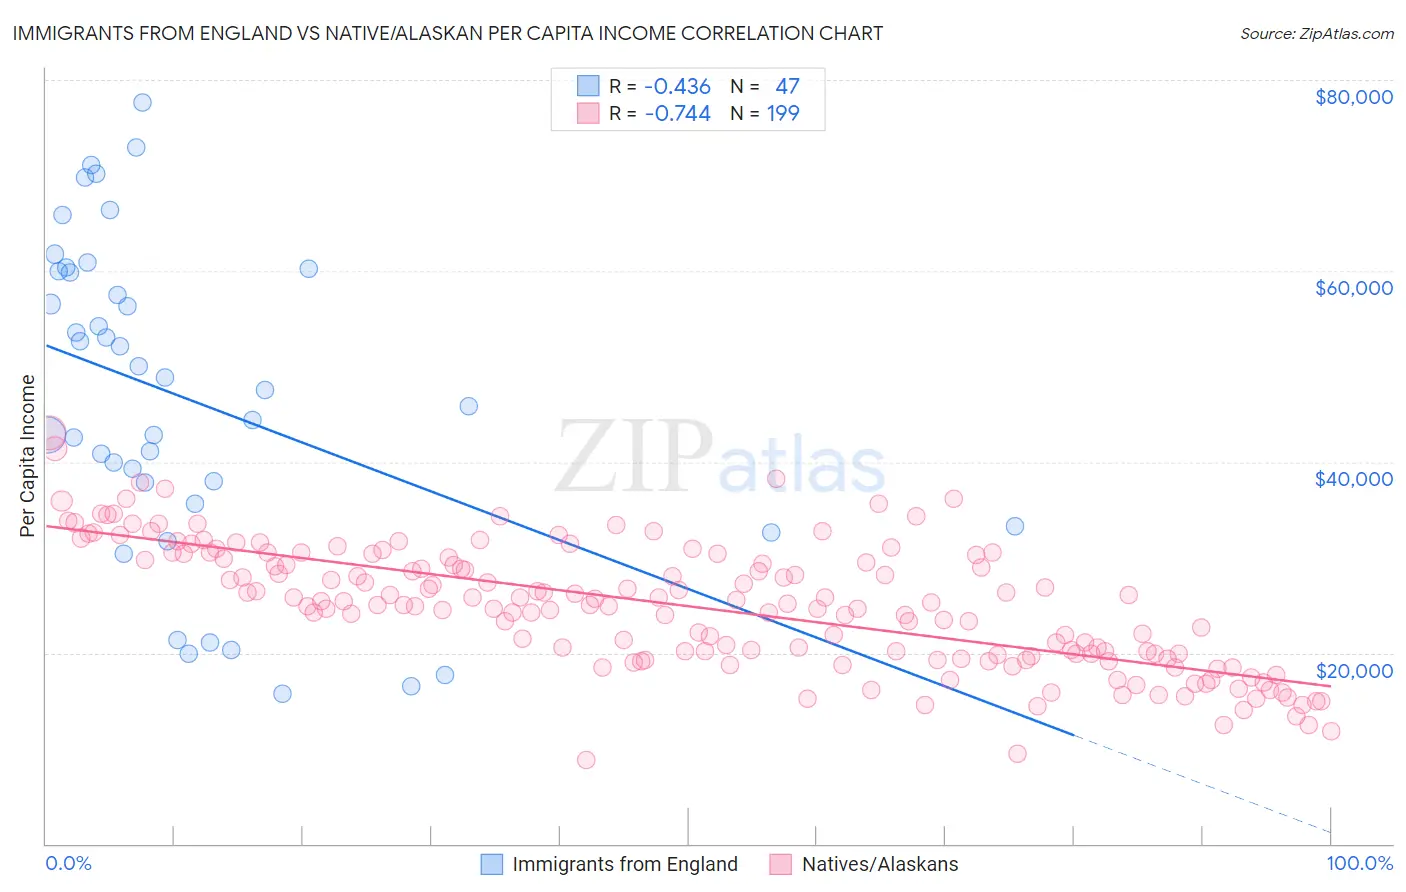 Immigrants from England vs Native/Alaskan Per Capita Income